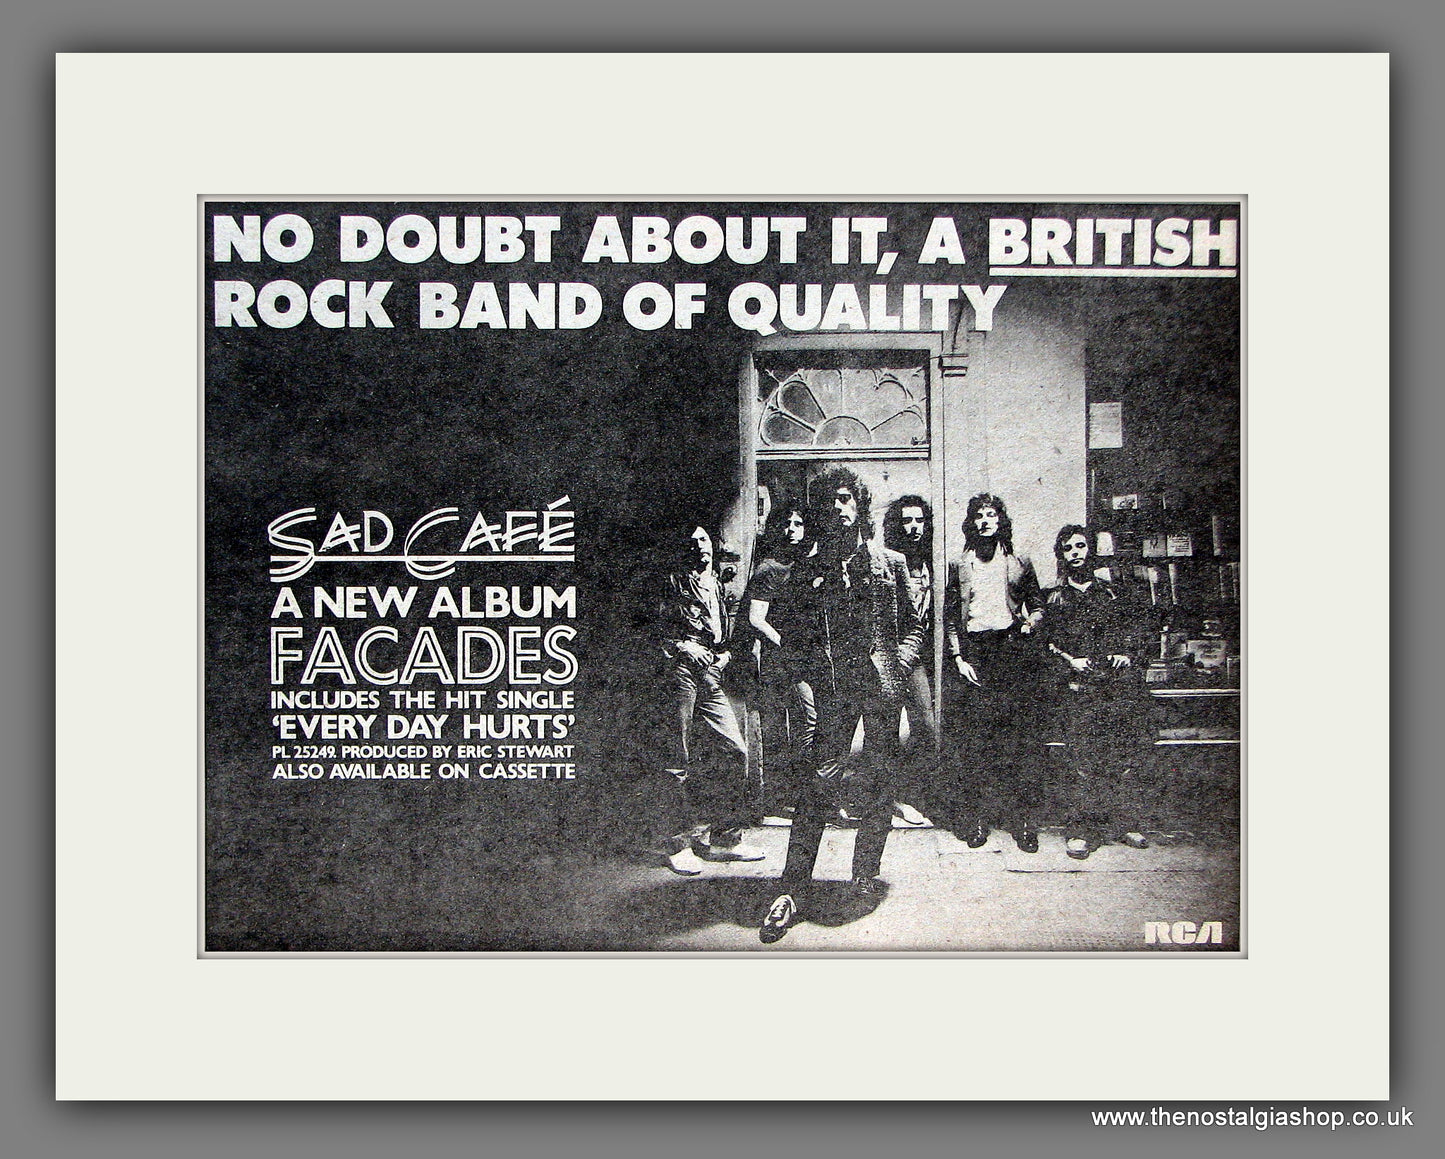 Sad Cafe Facades. Original Vintage Advert 1979 (ref AD56348)